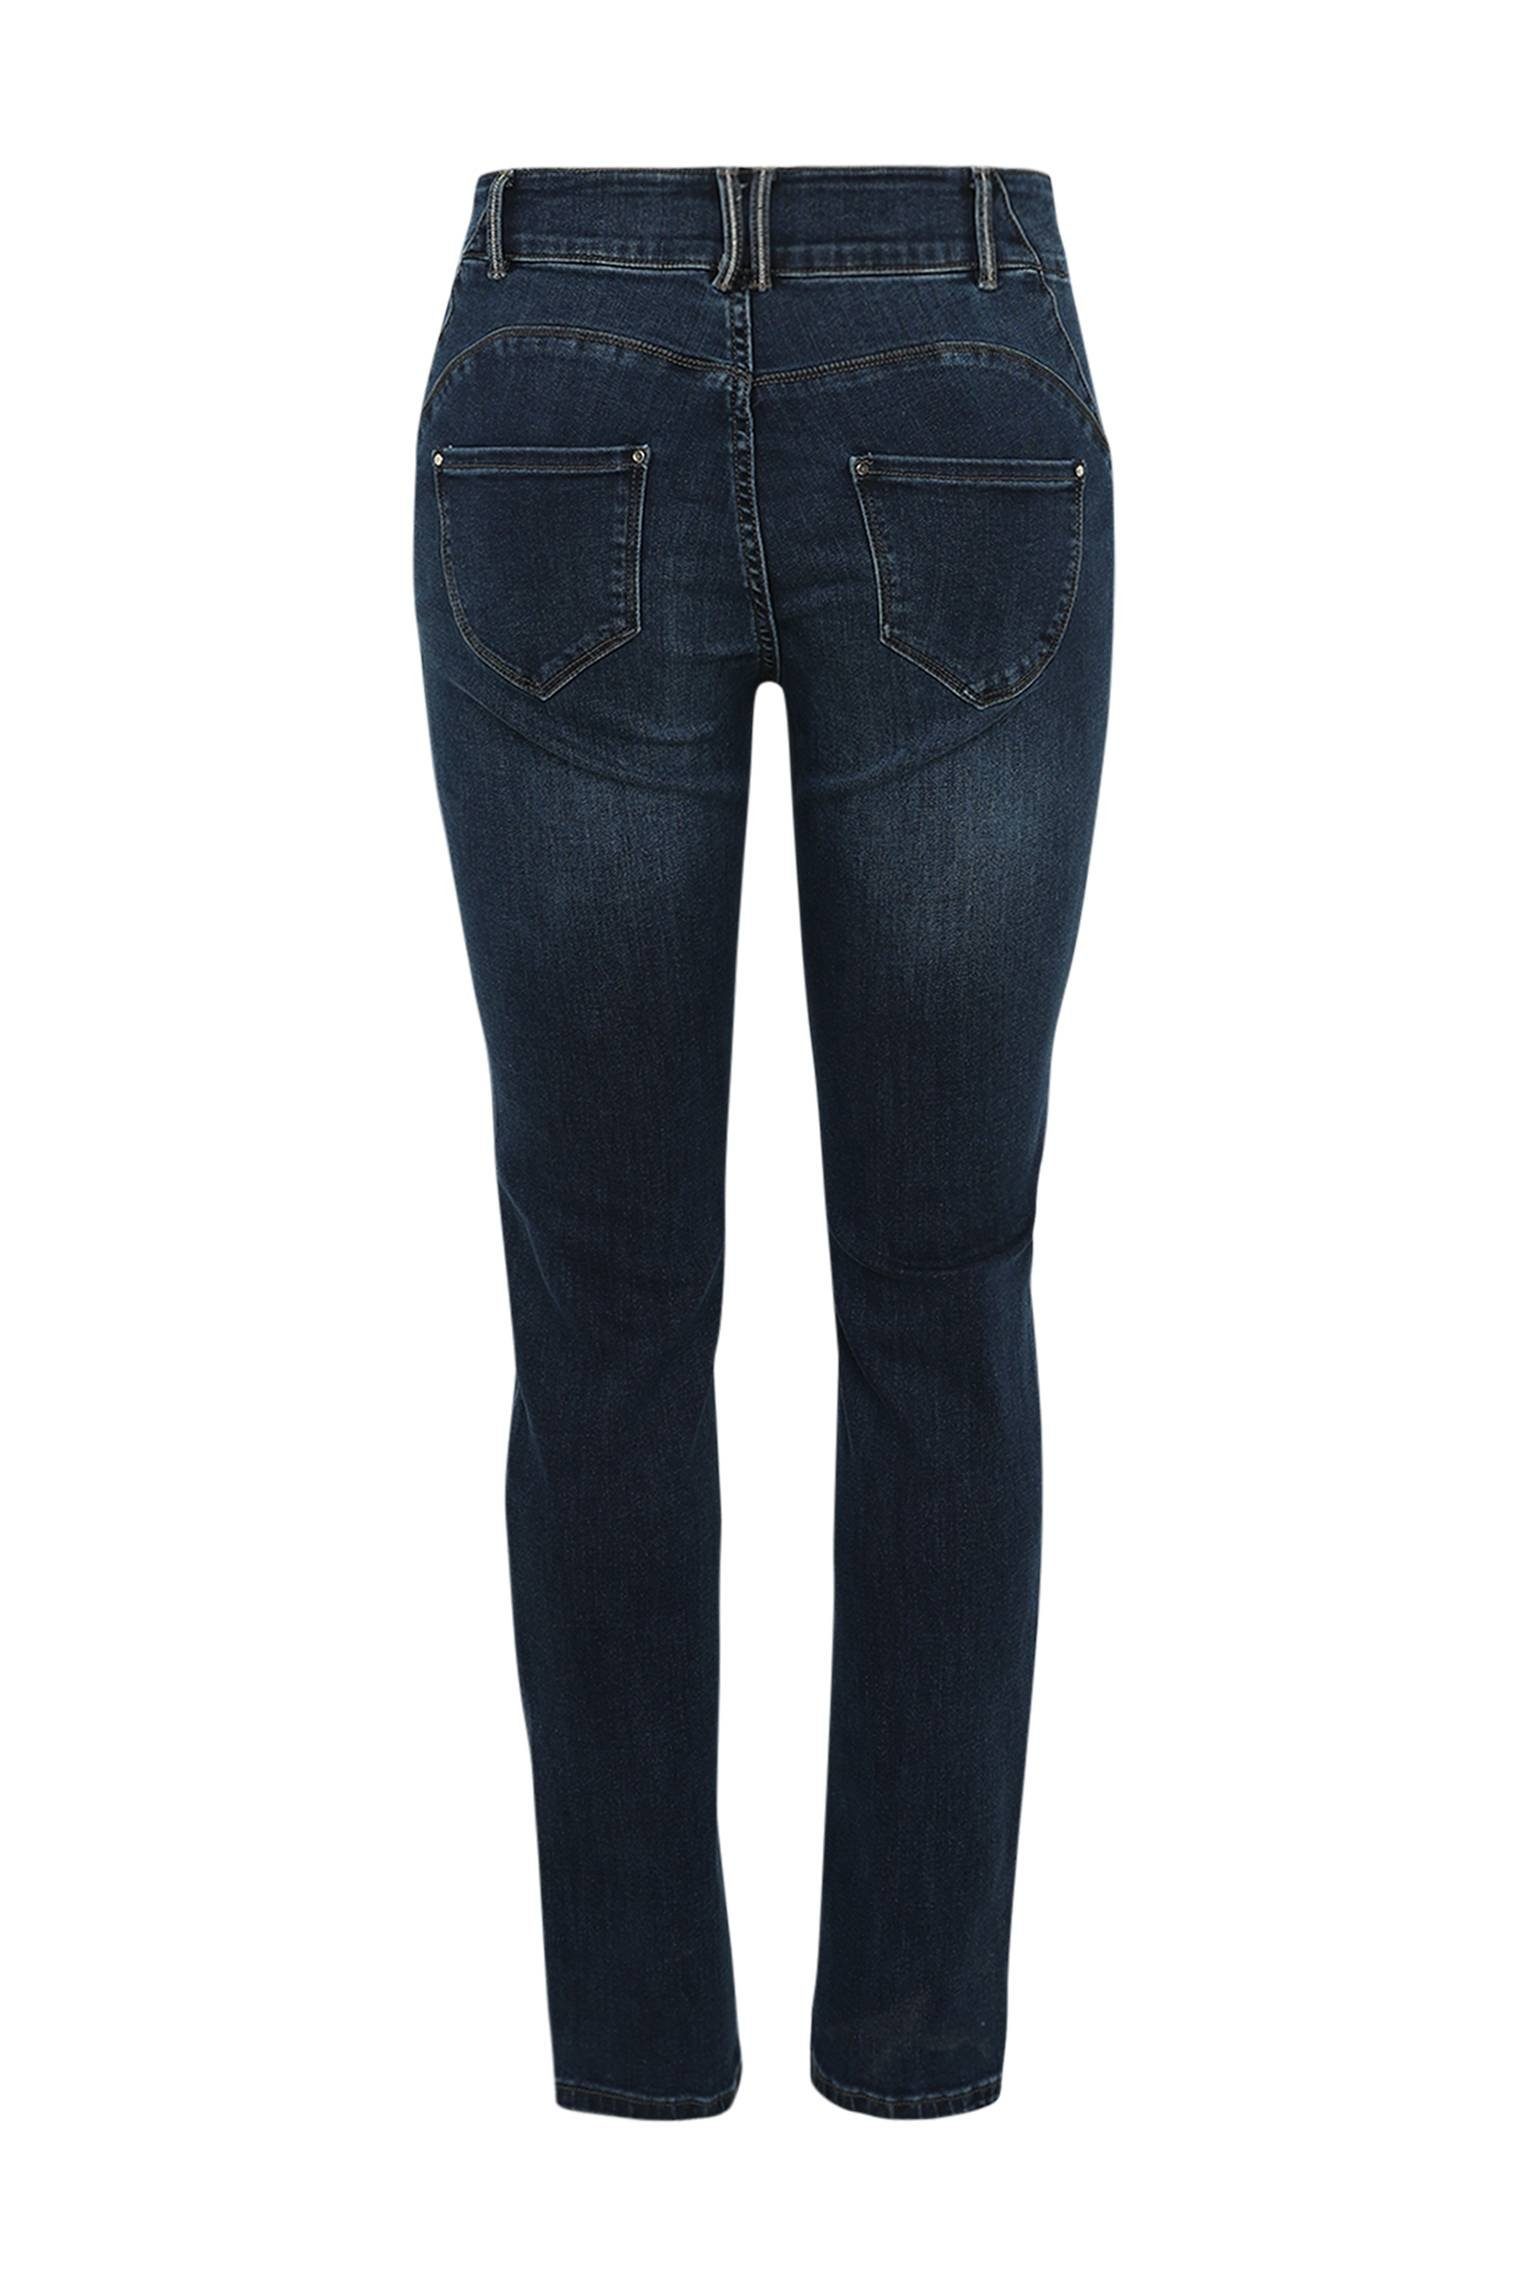 Paprika Slim-Fit-Jeans Louise Mit Push-Up 5-Pocket-Jeans L32